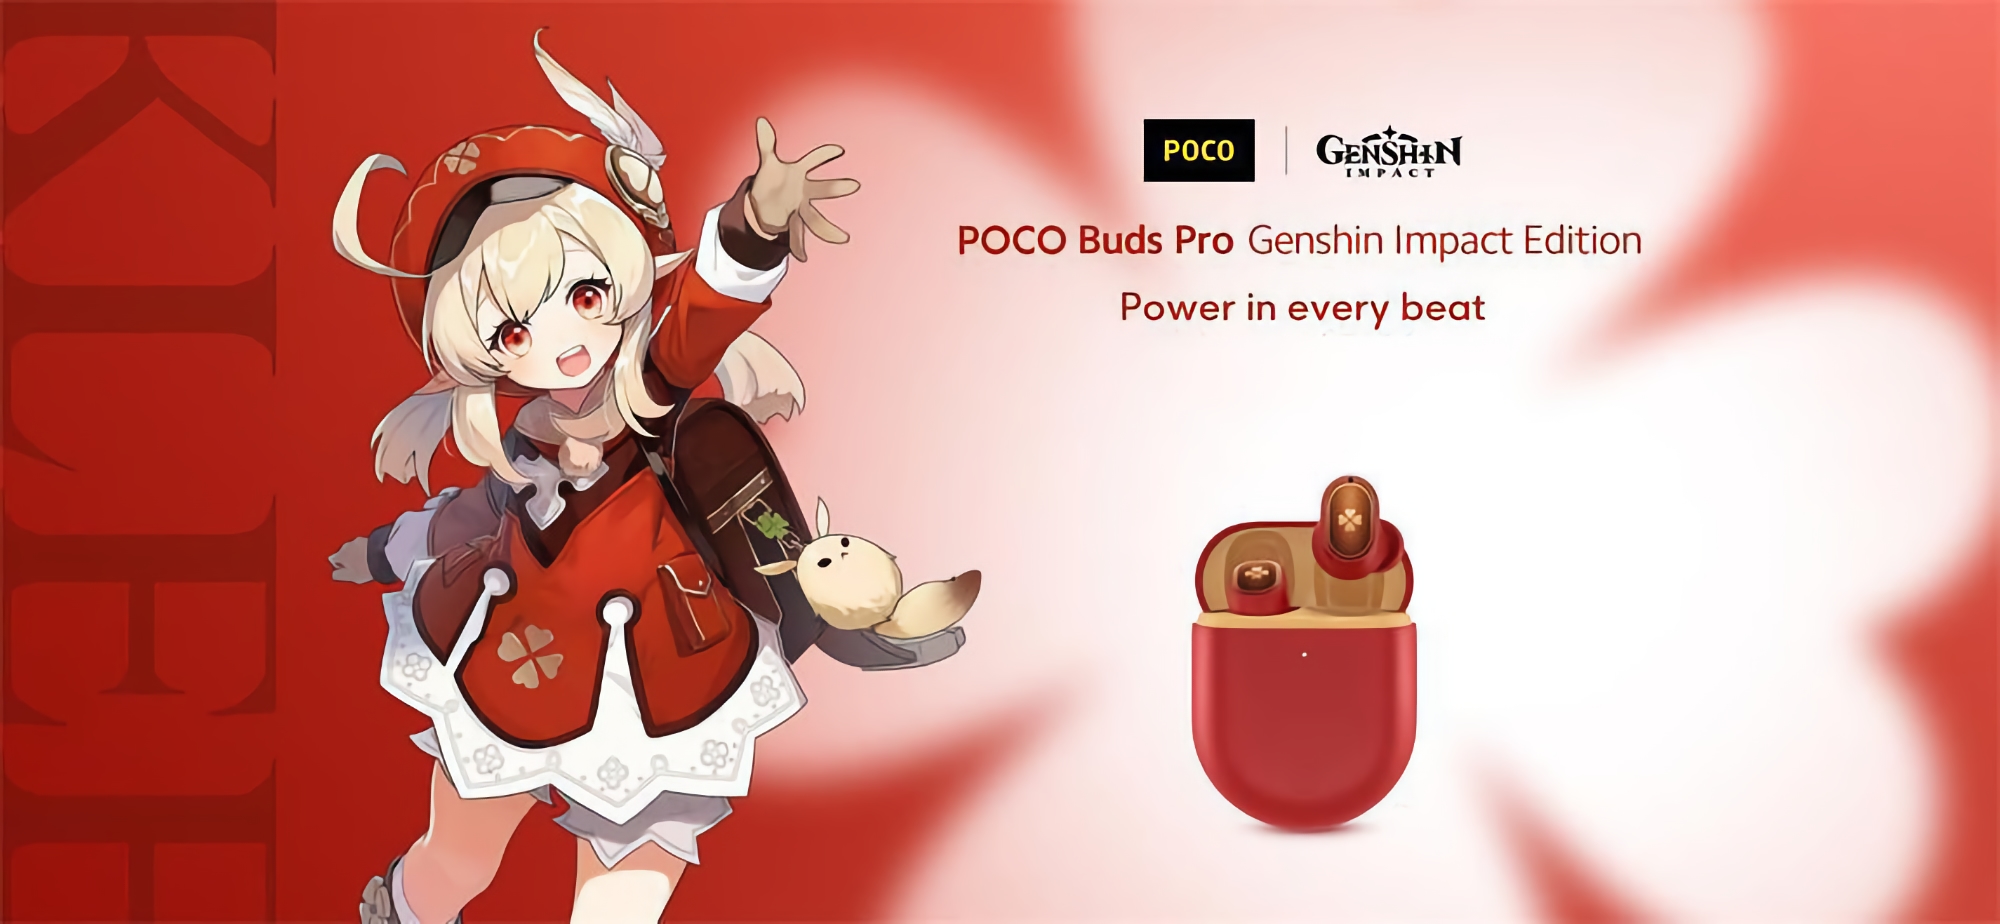 POCO Buds Pro Genshin Impact Edition lanzado en AliExpress